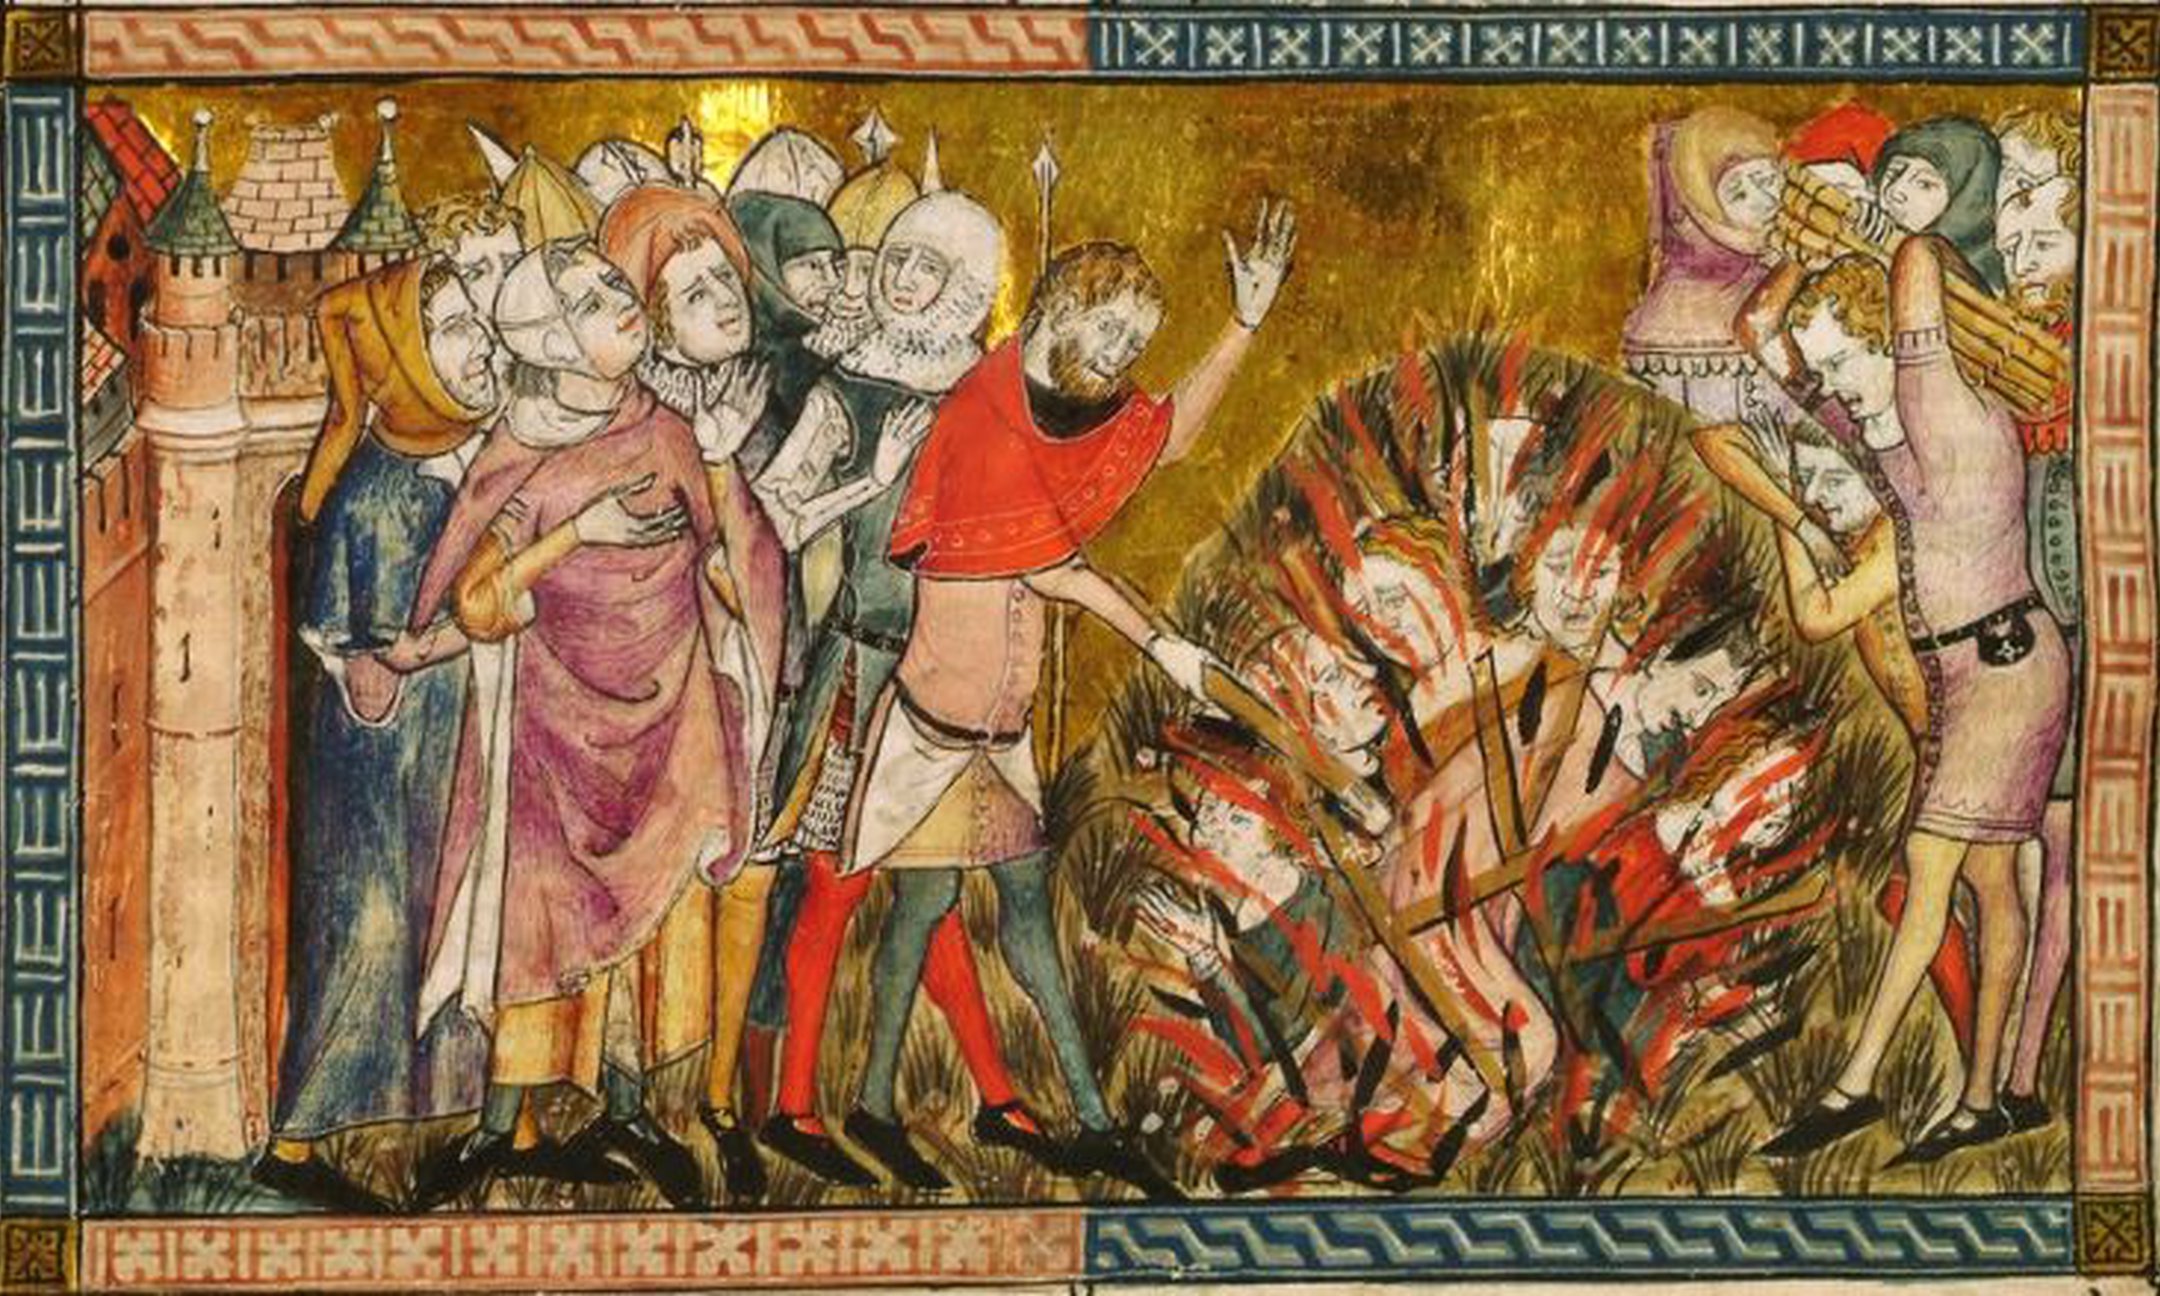 Illustration einer Verbrennung von Juden (ca. 1353). Juden schrieb man die Schuld an der Pestepidemie in Europa zu und beschuldigte sie, Brunnen zu vergiften.